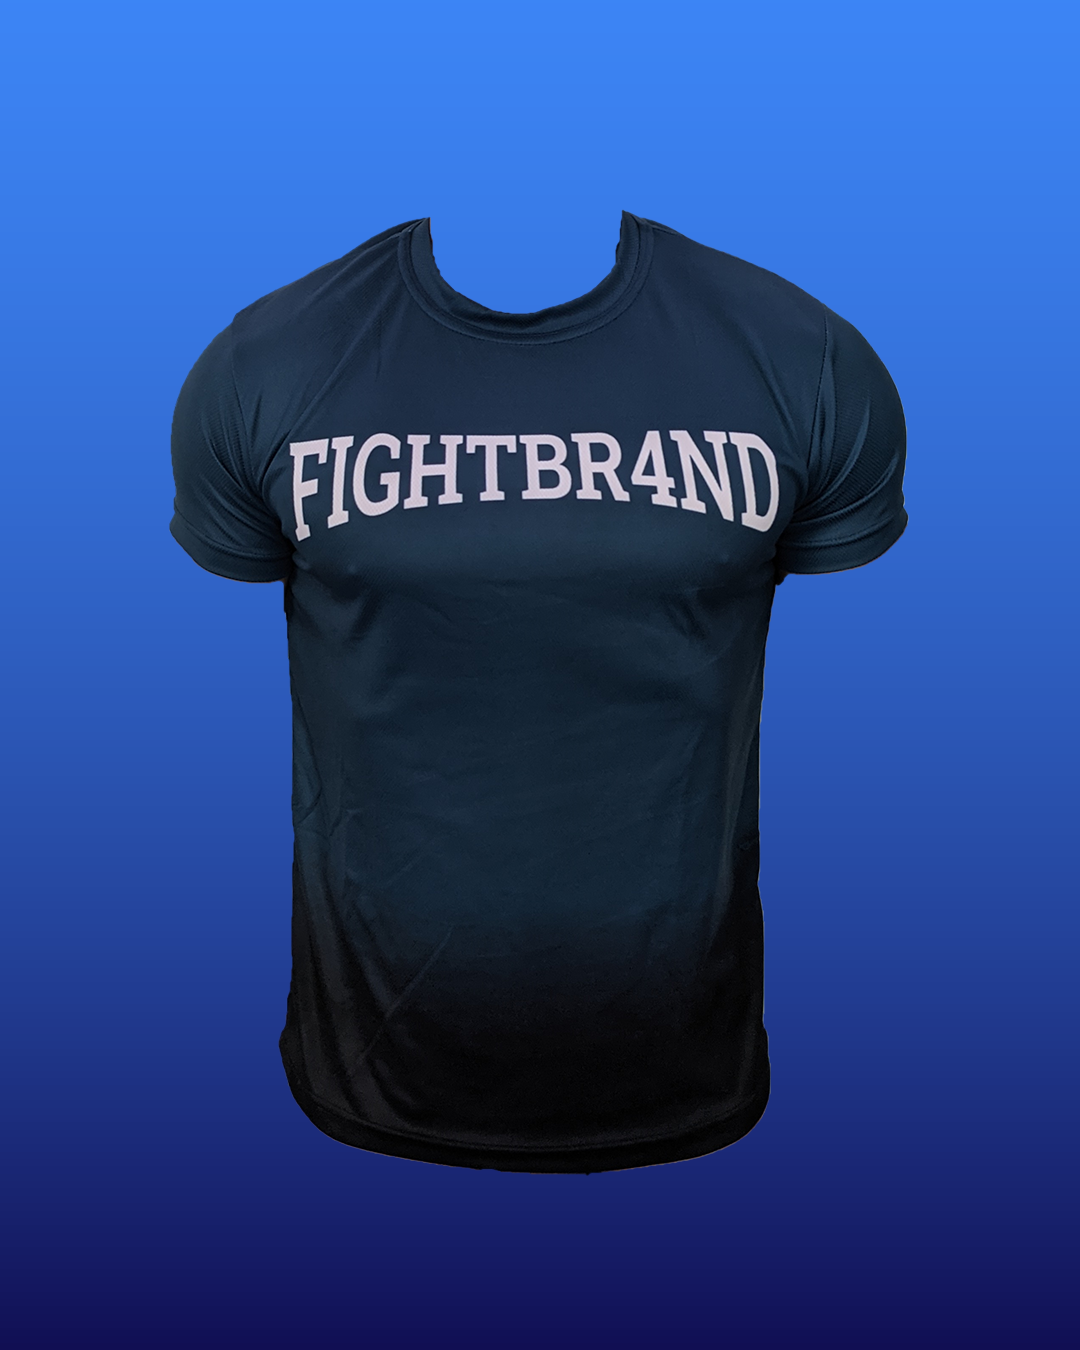 Technisches T-Shirt mit blauem und schwarzem Farbverlauf